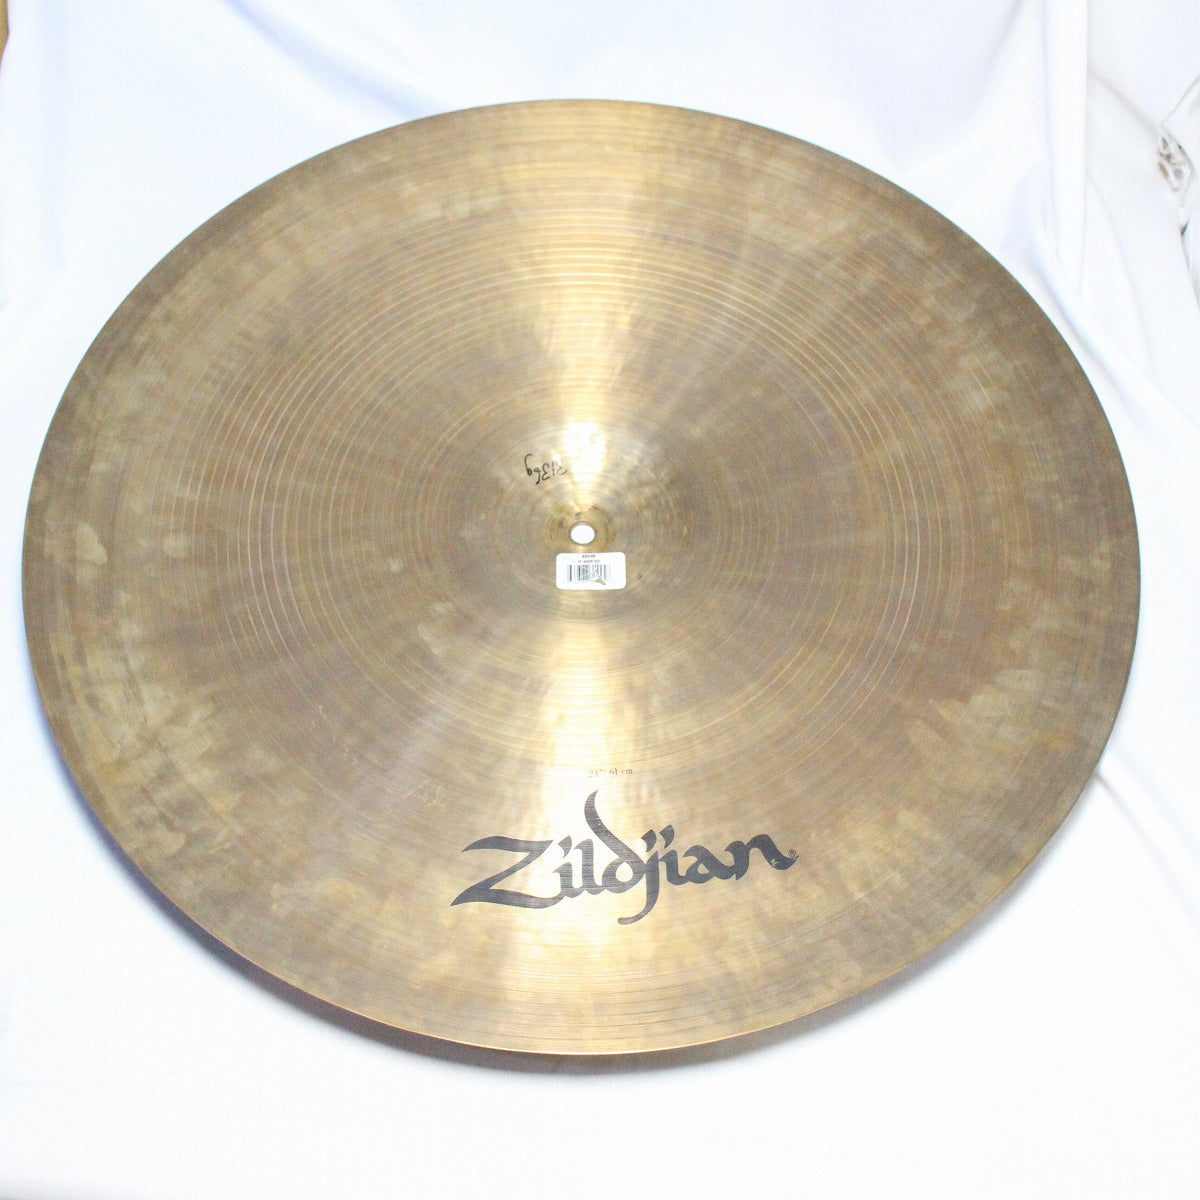 USED ZILDJIAN / K KEROPE RIDE 24inch 3132g Zildjian KEROPE Ride Cymbal [08]